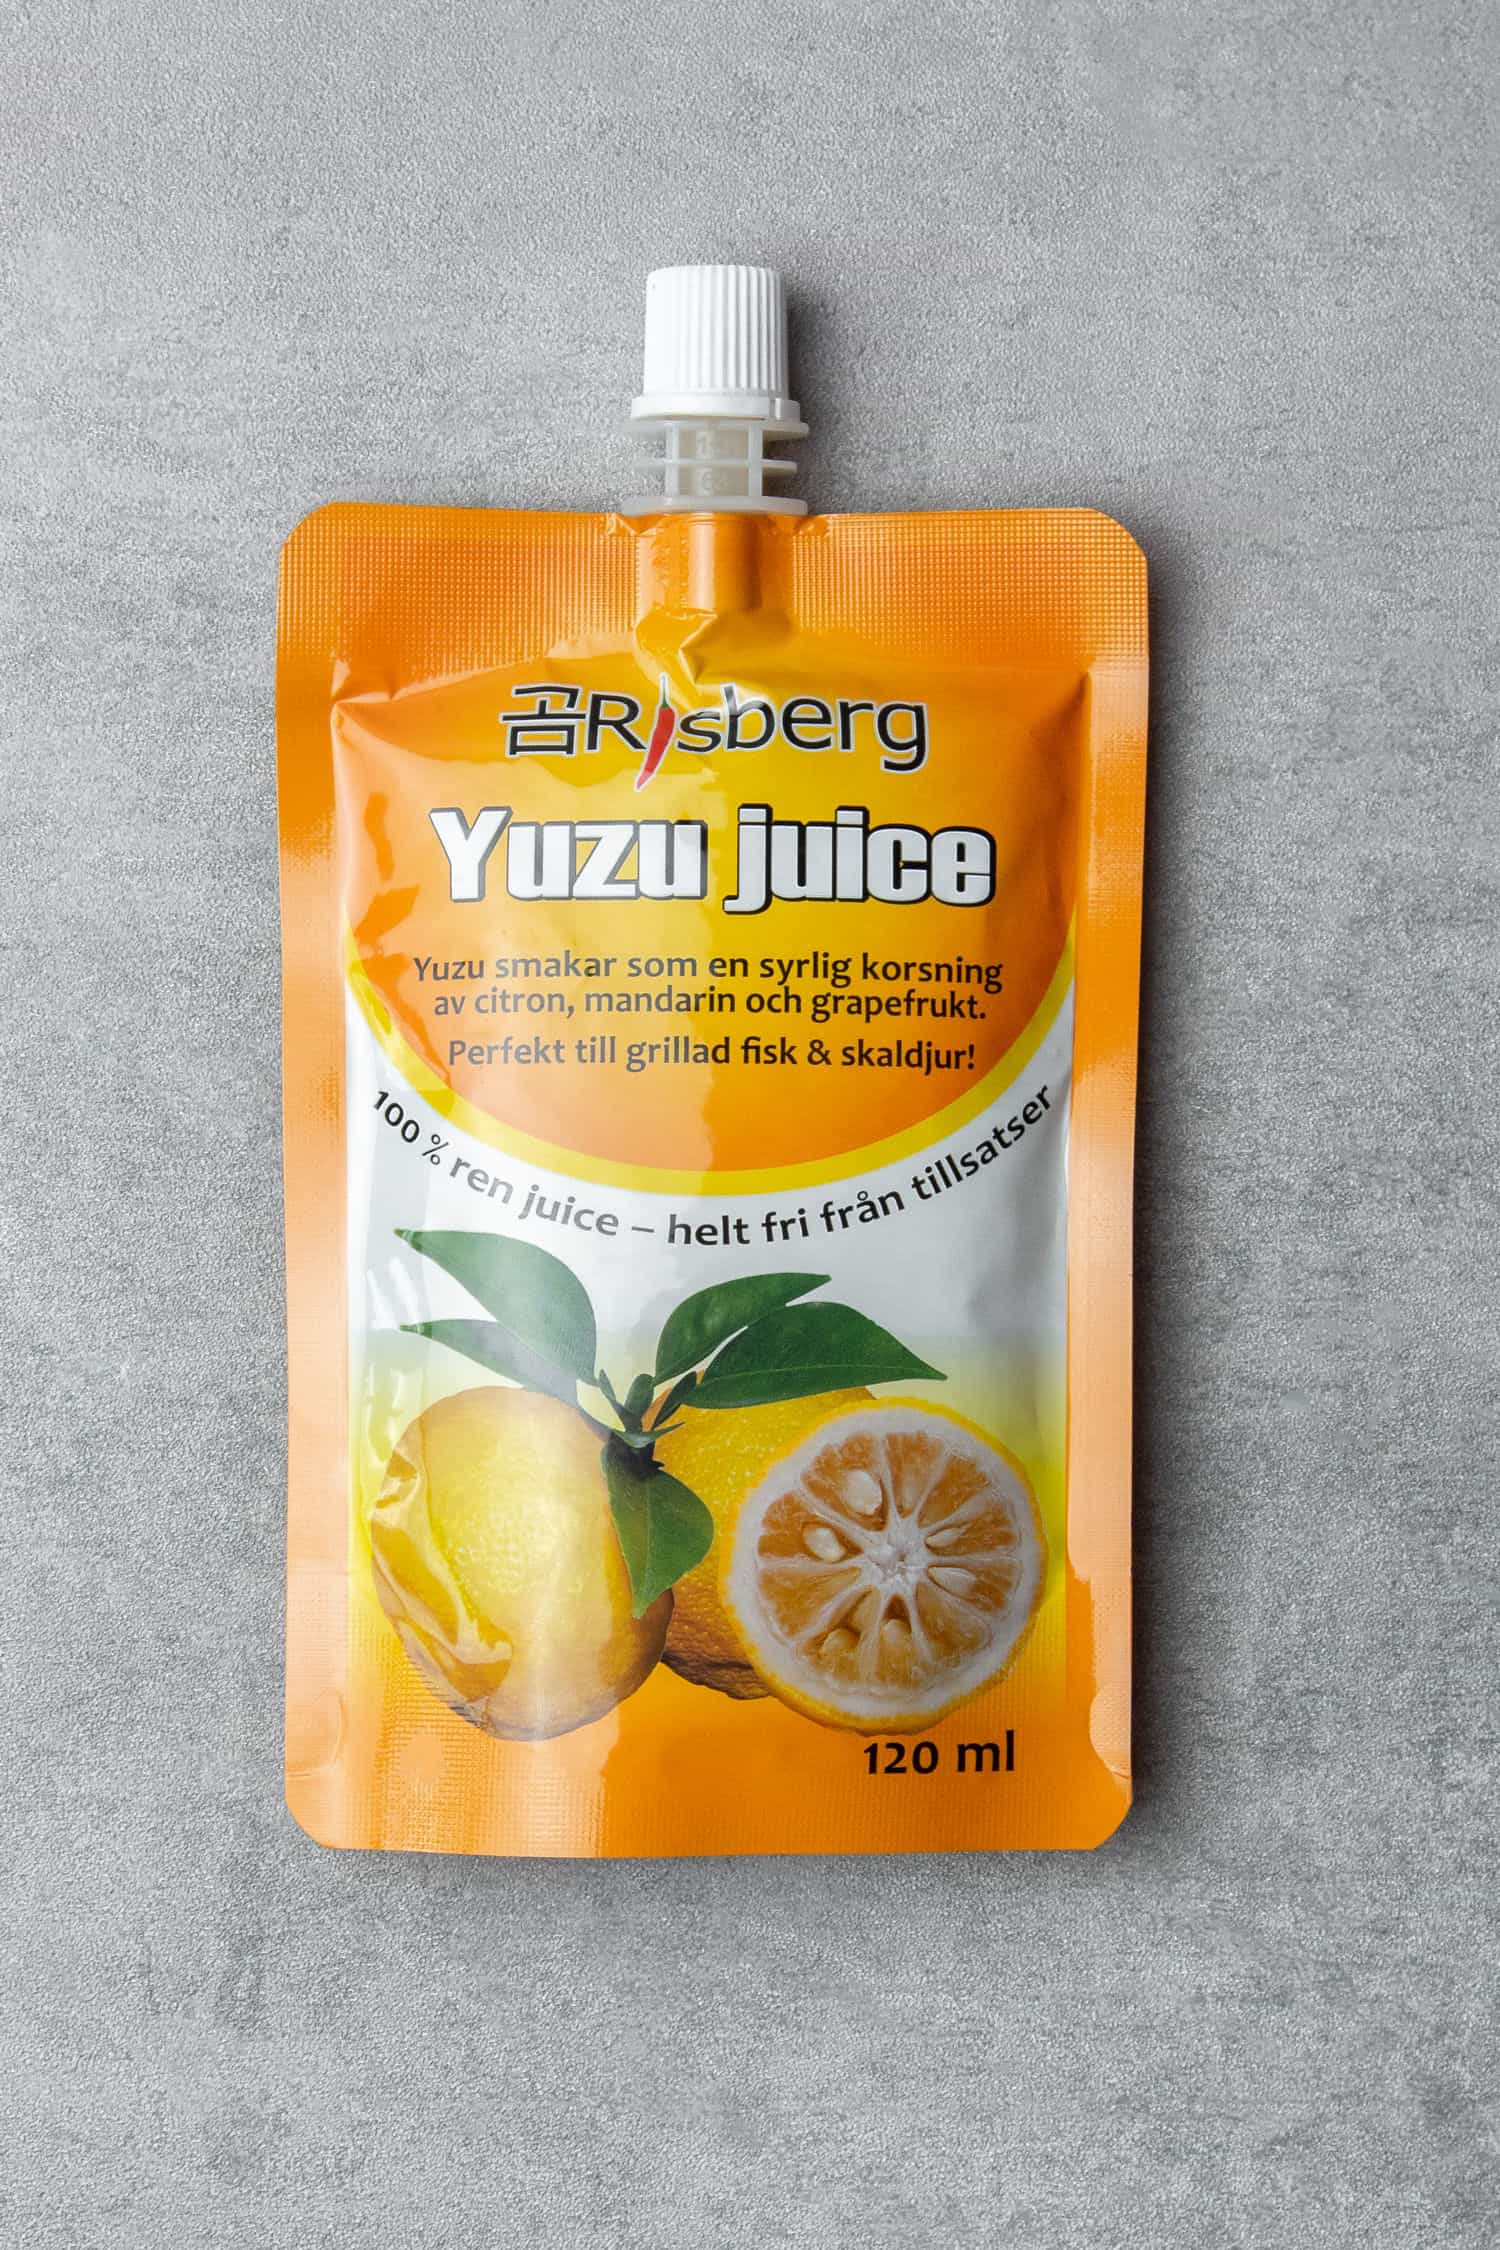 Yuzu juice